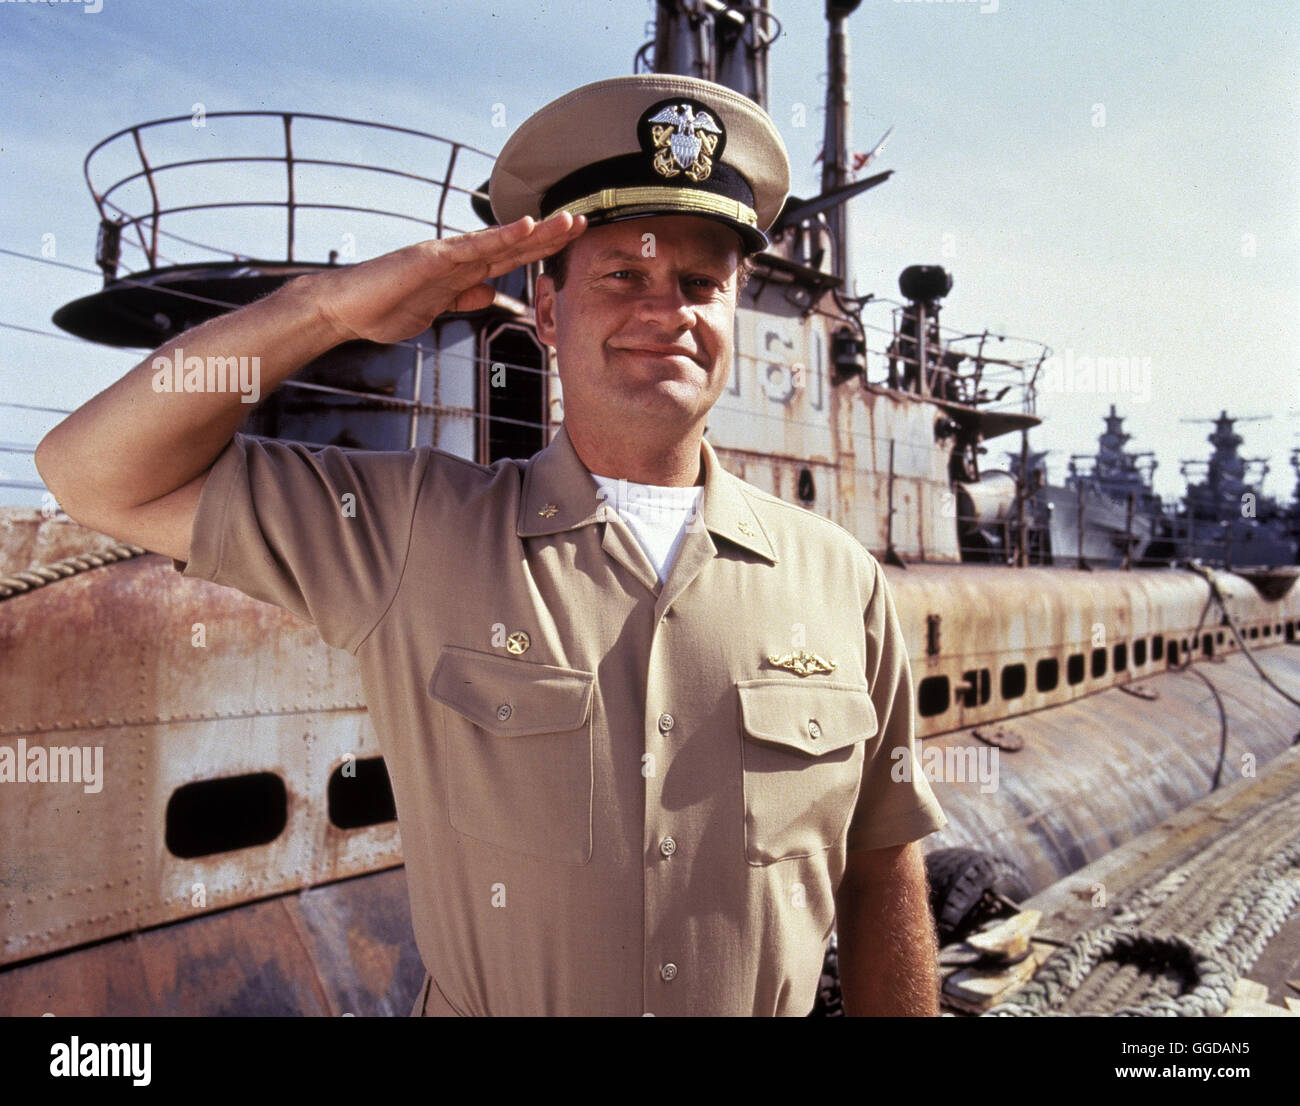 MISSION: ROHR FREI! / Down Periscope USA 1996 / David S. Ward Der begabte Navy-Offizier Thomas Dodge (KELSEY GRAMMER) wird wegen seiner skurrilen Eigenheiten seit Jahren bei der längst fälligen Beförderung übergangen.Um ihn endlich loszuwerden, beauftragt ihn Admiral Graham, mit einer unfähigen Crew und einem schrottreifen Diesel-U-Boot in mehrere hypermoderne Militärhäfen einzudringen. Doch der Marineprofi läuft zur Hochform auf. Regie: David S. Ward aka. Down Periscope Stock Photo